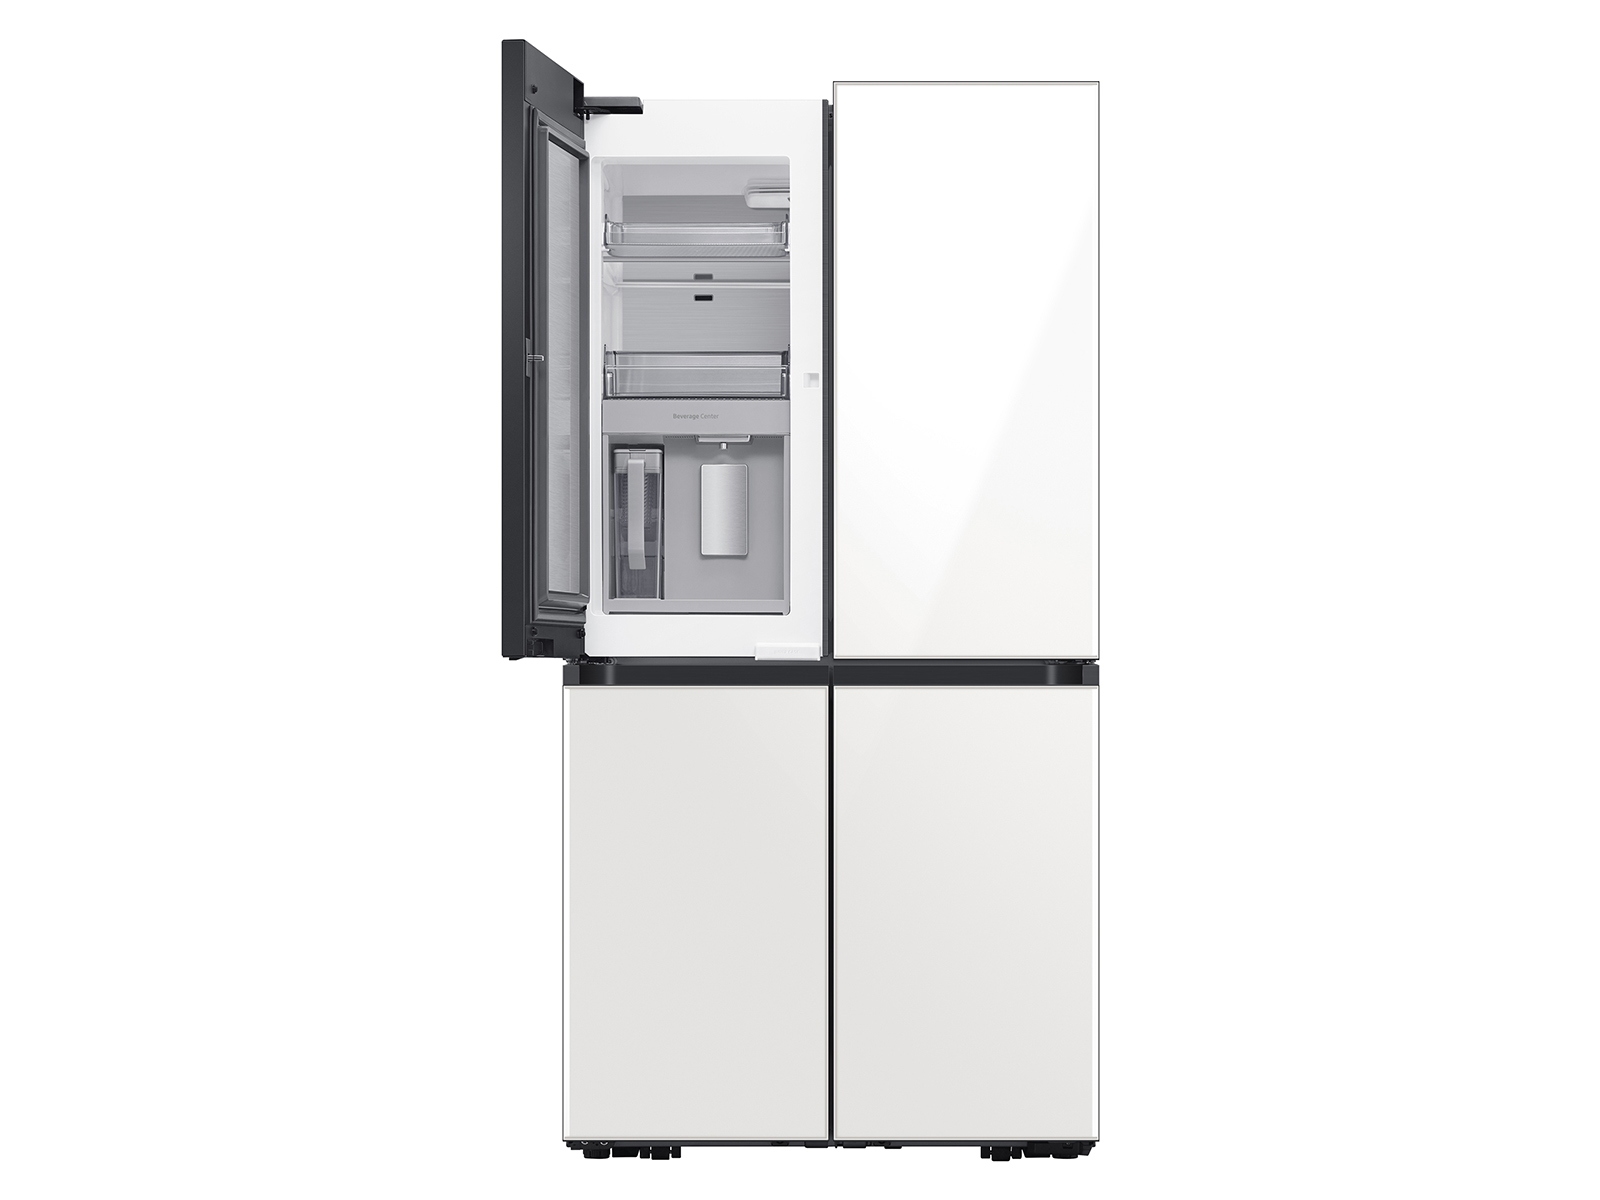 Thumbnail image of Bespoke 4-Door Flex™ Refrigerator (23 cu. ft.) in Emerald Green Steel